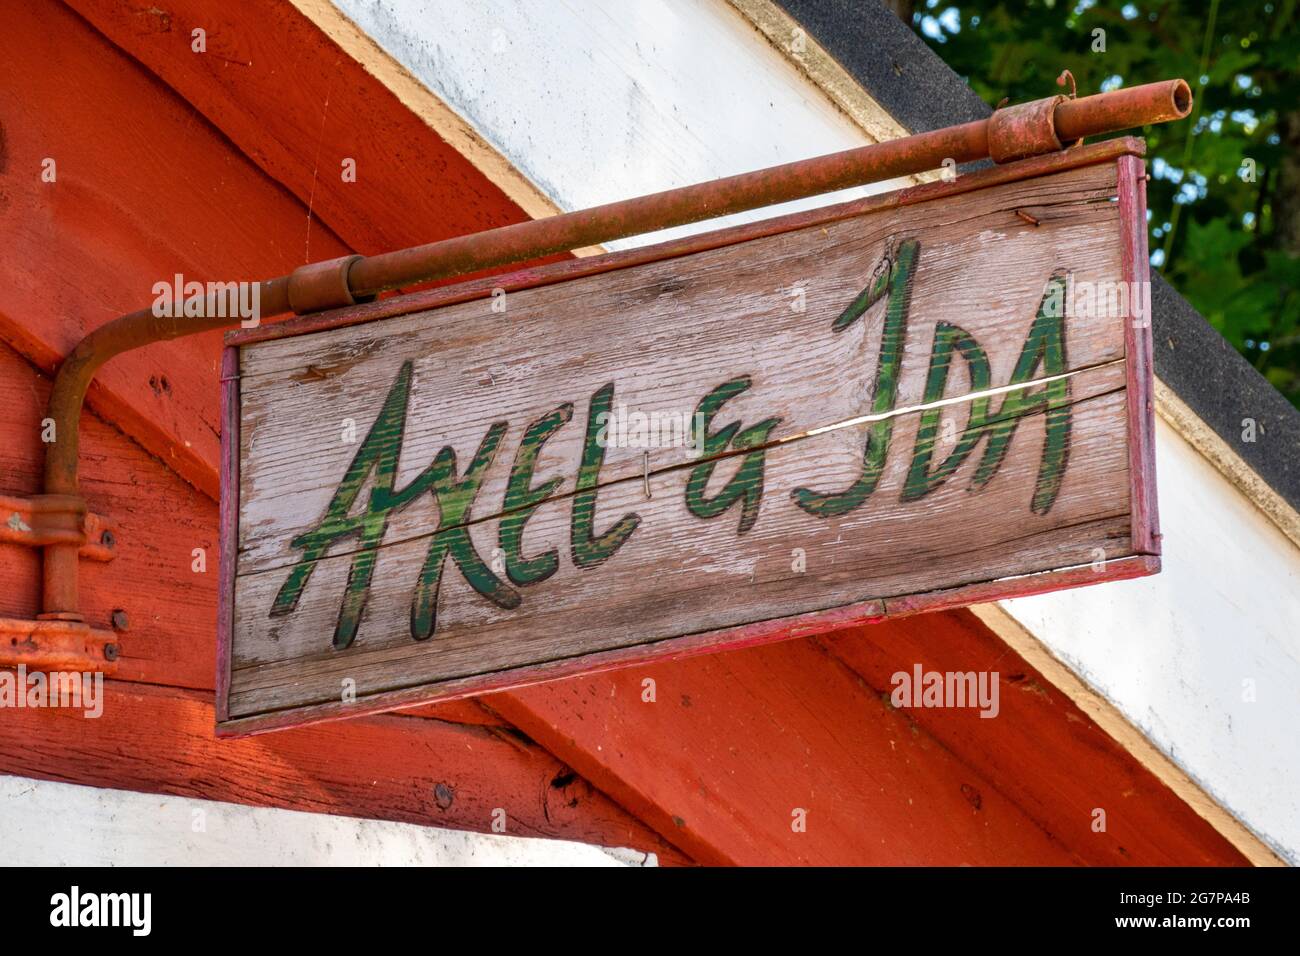 Axel & Ida. Segno di legno intemperato di un negozio di artigianato o souvenir in un ambiente storico di Strömfors o Ruotsinpyhtää, Finlandia. Foto Stock